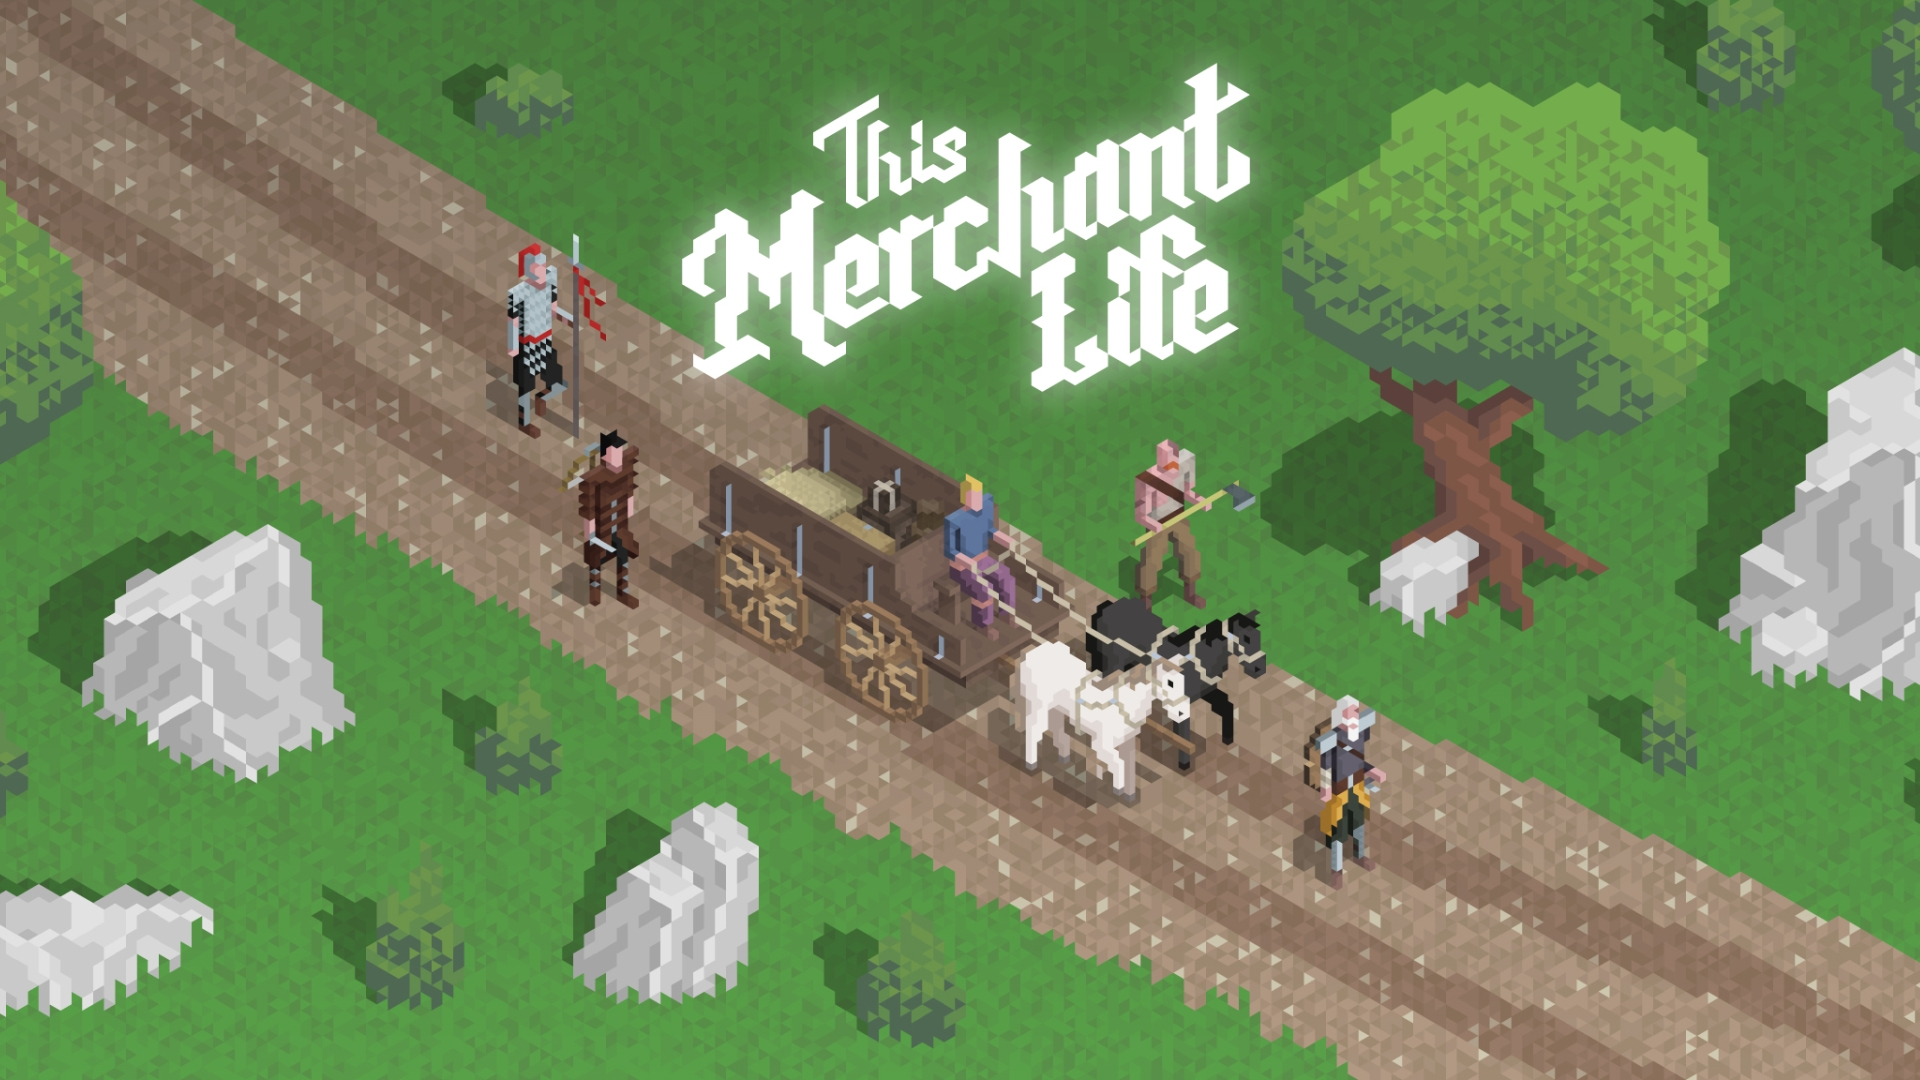 This game игра. This Merchant Life. Игра Horse Life. Merchant игра. Great Merchant игра.